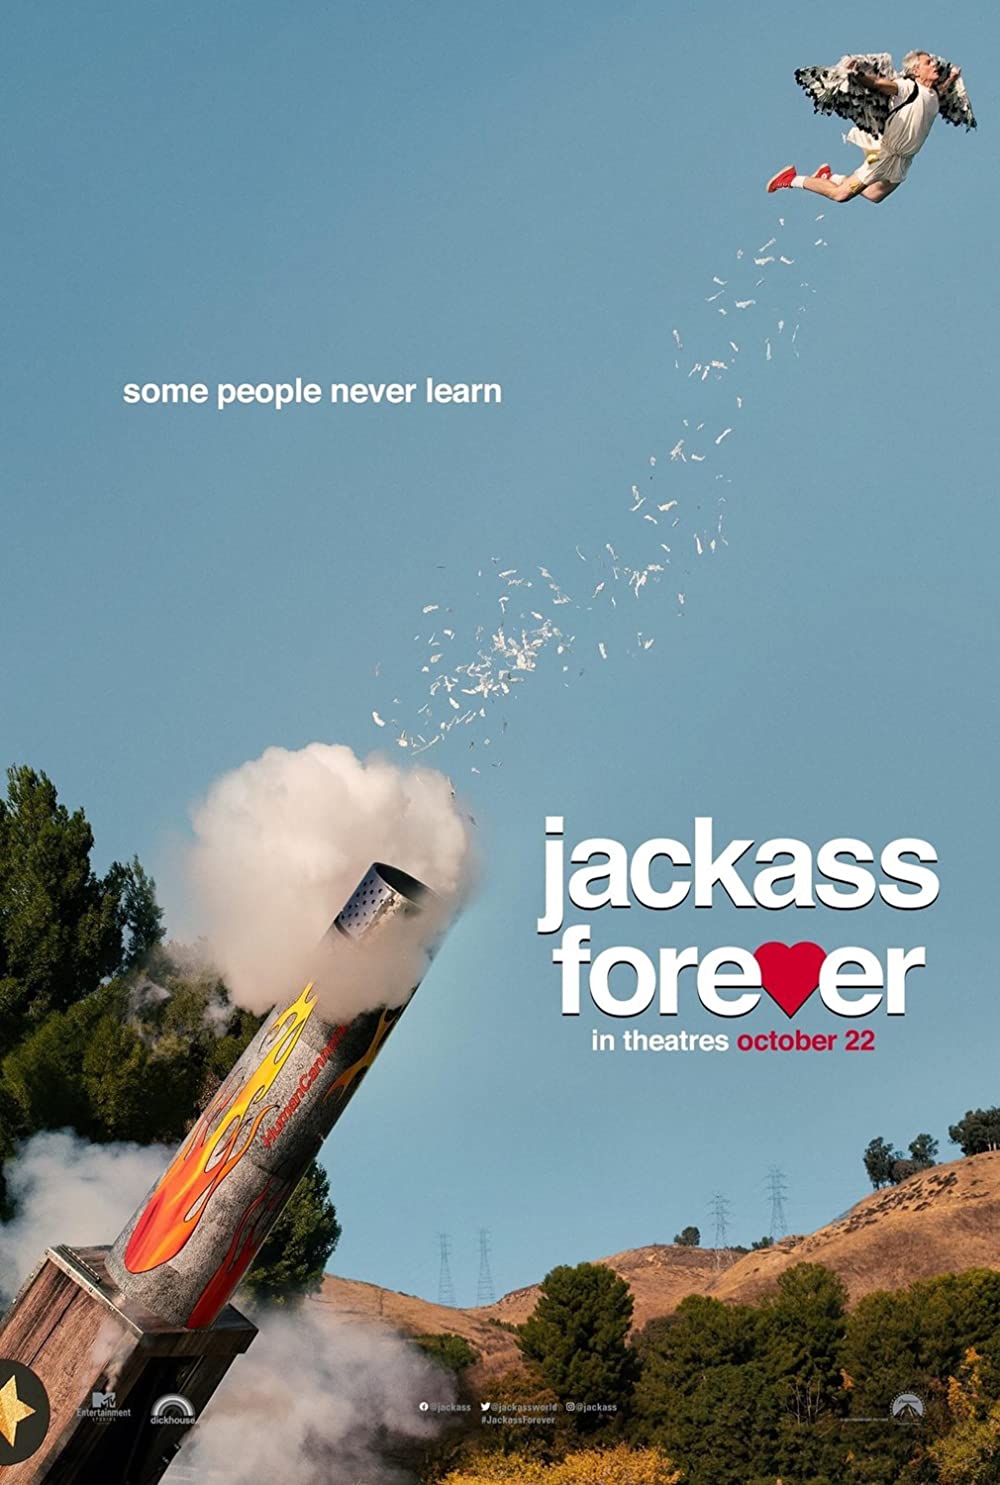 ดูหนังออนไลน์ฟรี Jackass Forever (2022) แจ็คแอส ฟอร์เอฟเวอร์ หนังเต็มเรื่อง หนังมาสเตอร์ ดูหนังHD ดูหนังออนไลน์ ดูหนังใหม่